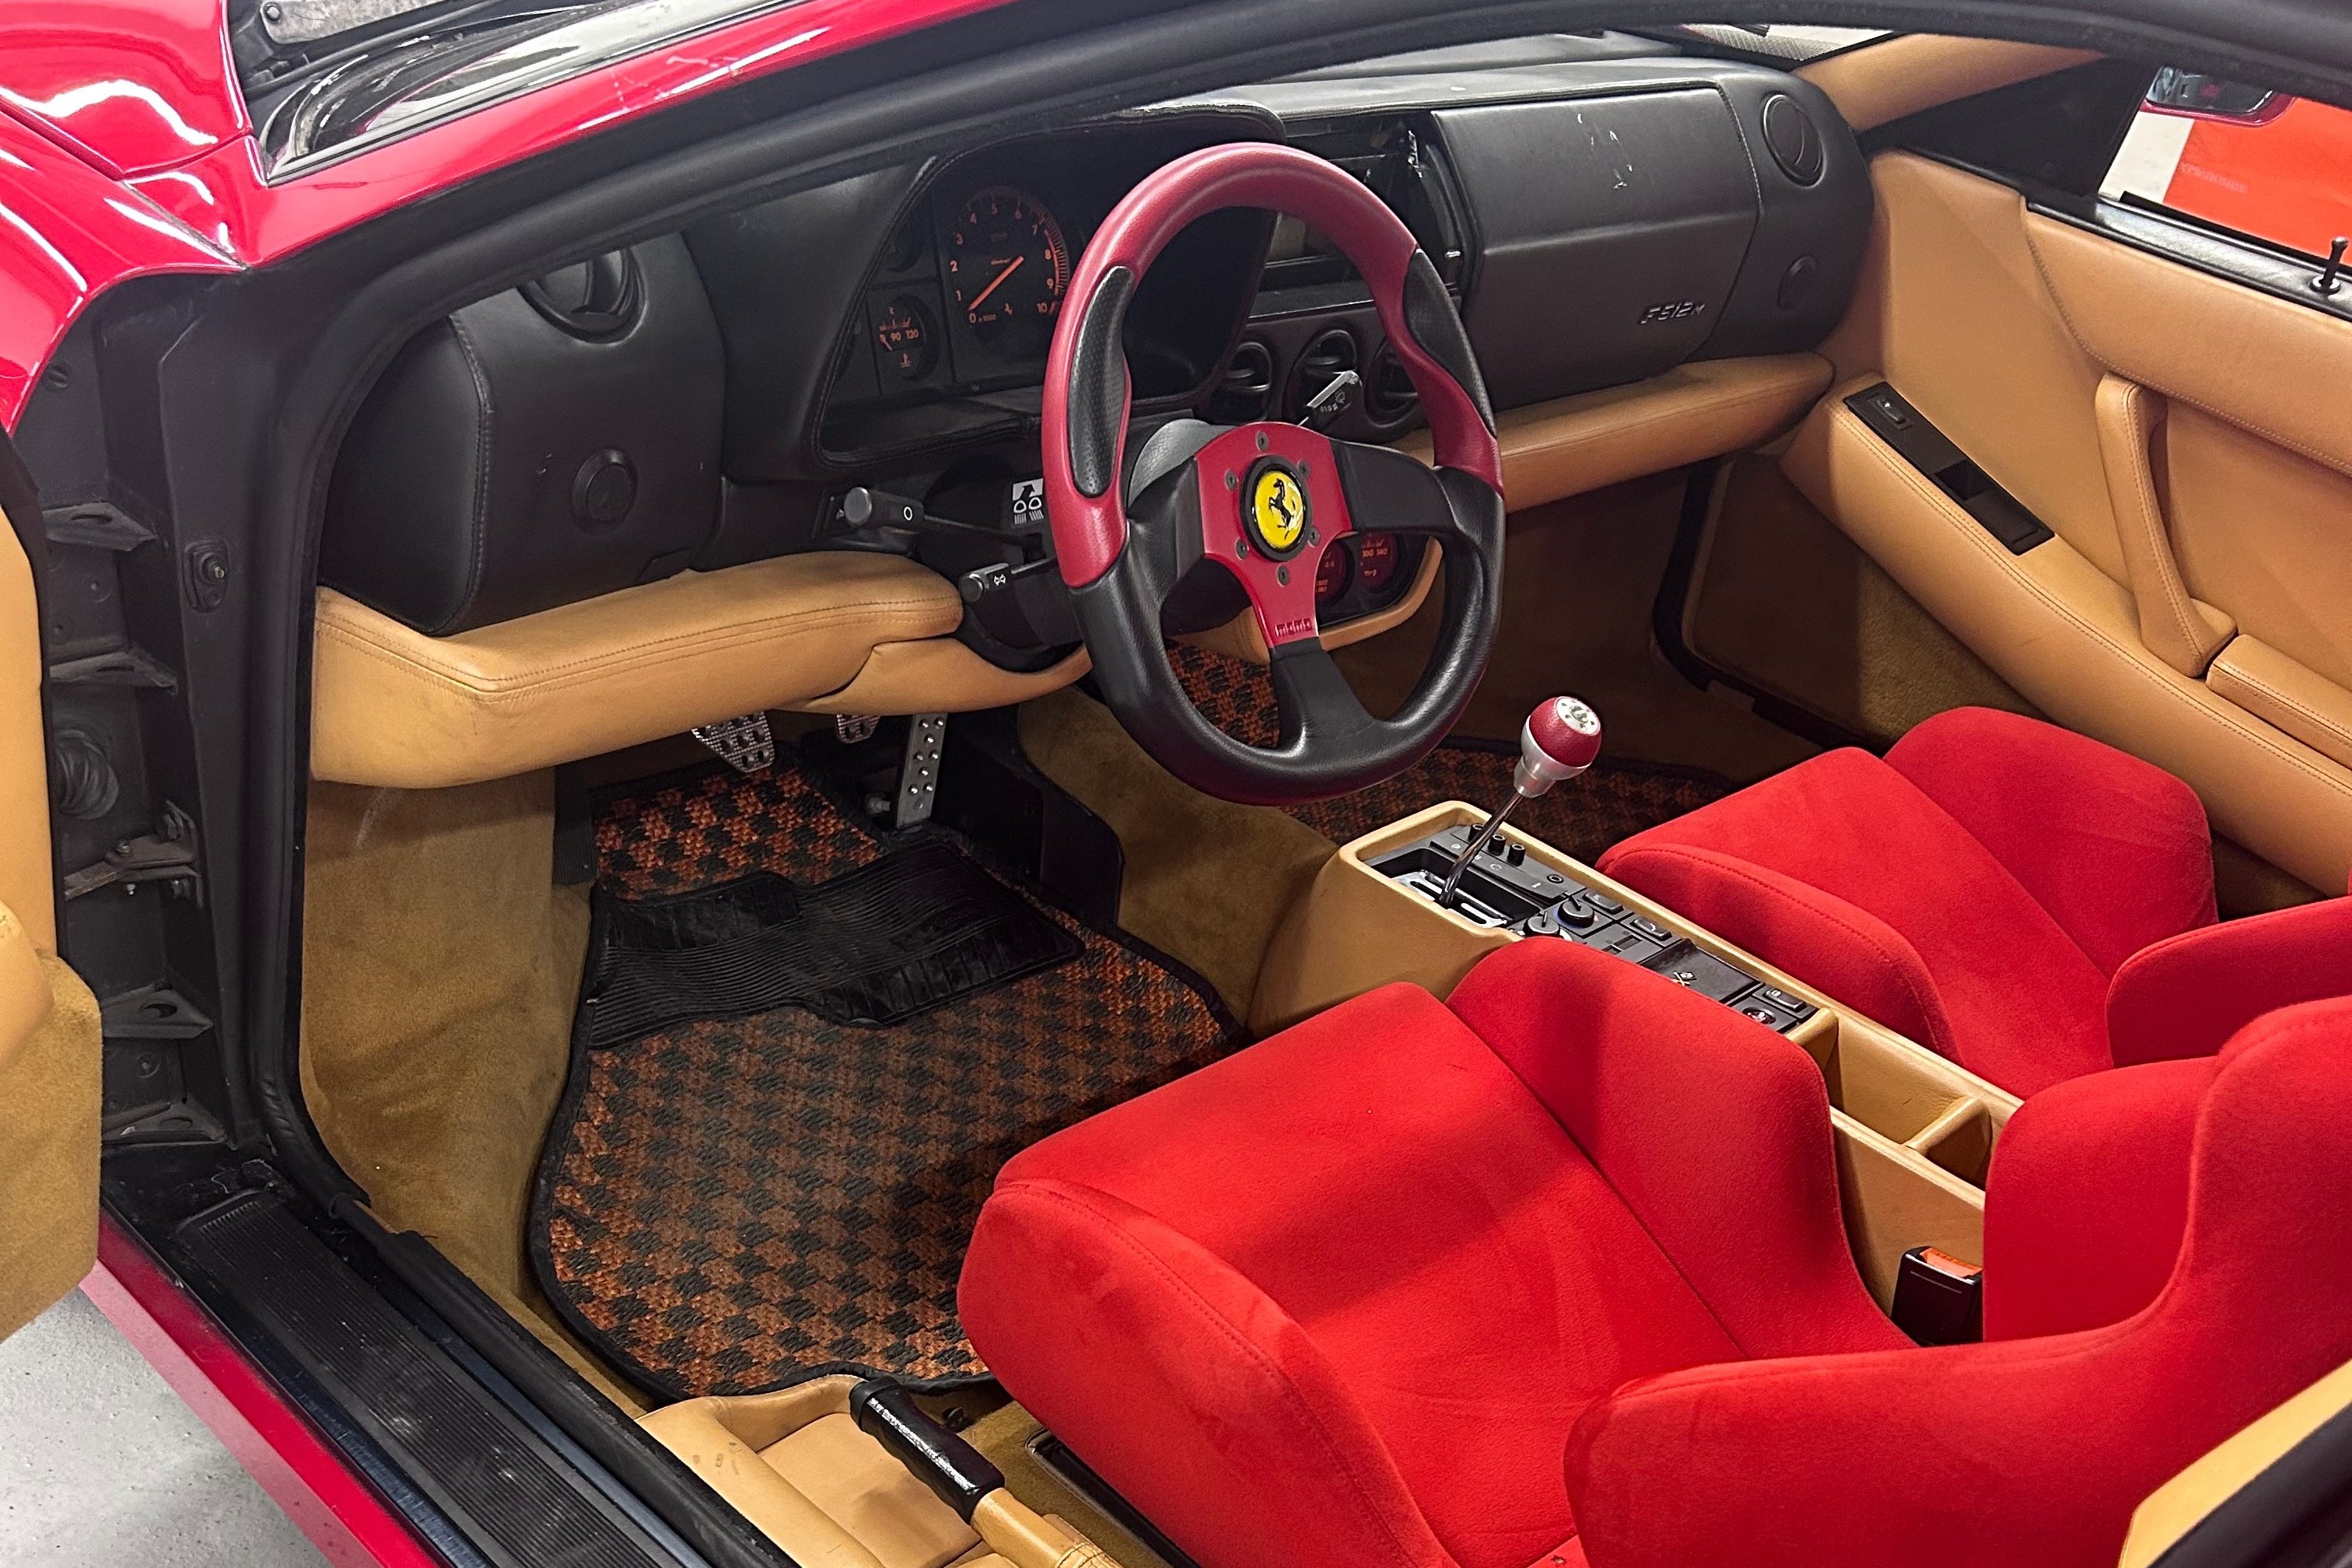 Siêu xe Ferrari được tìm lại sau gần 30 năm mất cắp - ảnh 4